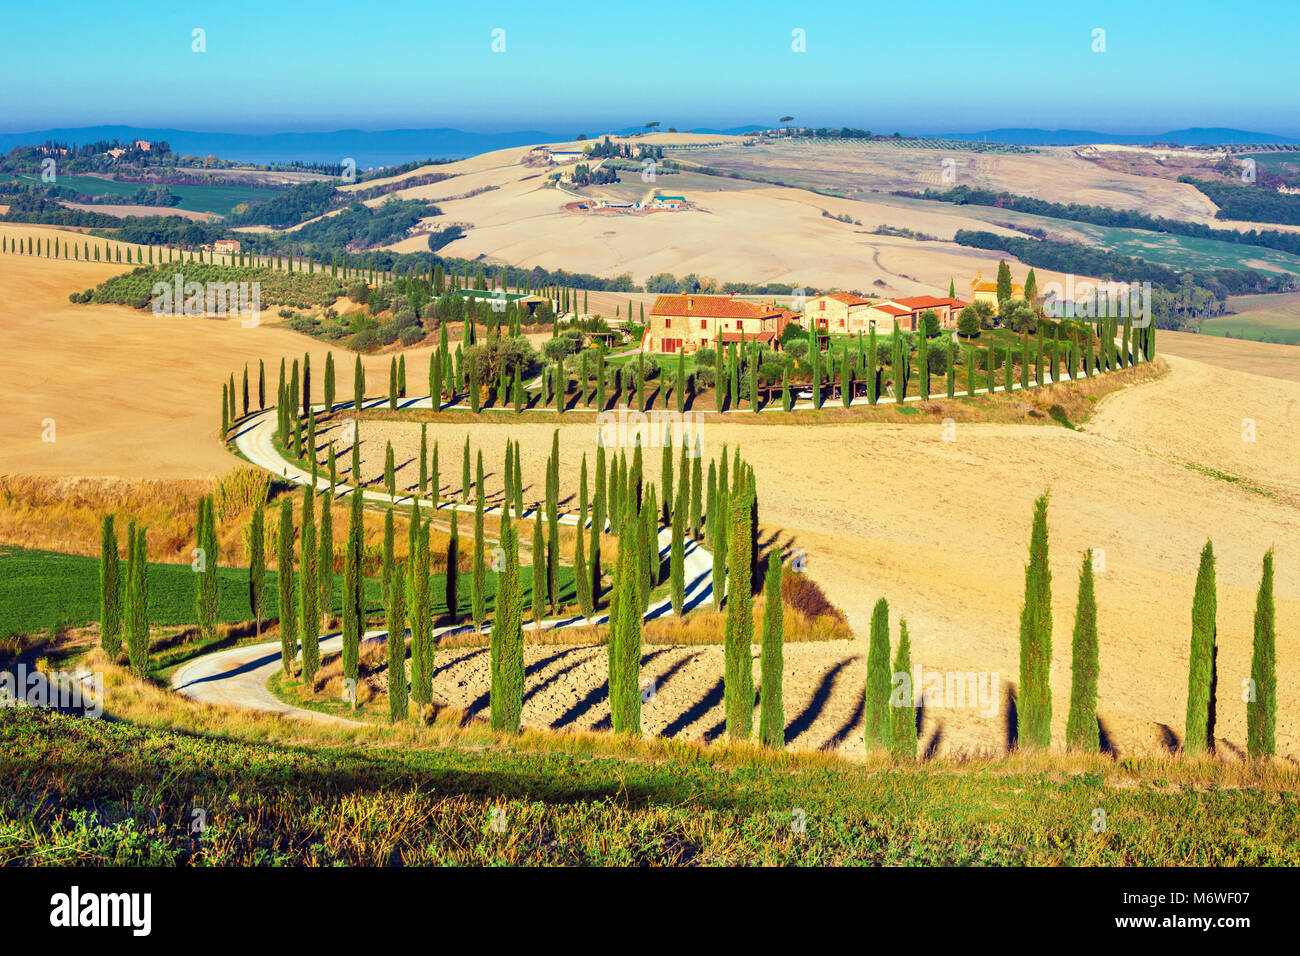 Crete Senesi, Toskana, Italien. Ein einsames Bauernhaus mit Zypressen und Olivenbäumen, Rolling Hills, Toskana, Italien. Stockfoto